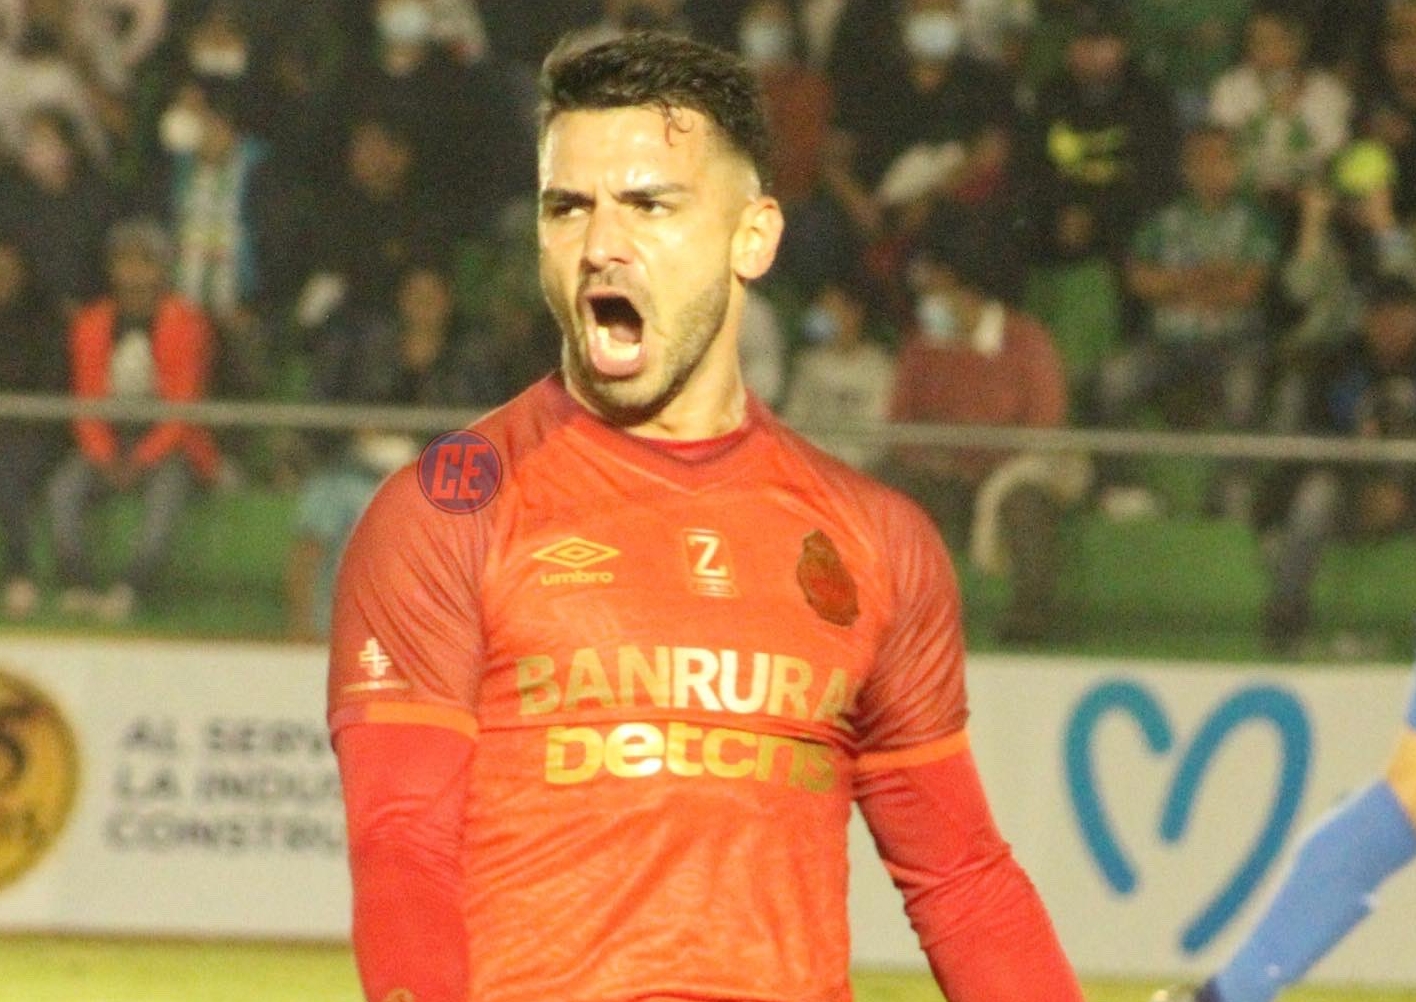 Matías Rotondi marcó su primer doblete en el Torneo Apertura. (Foto Prensa Libre: Cortesía Corazón Escarlata).